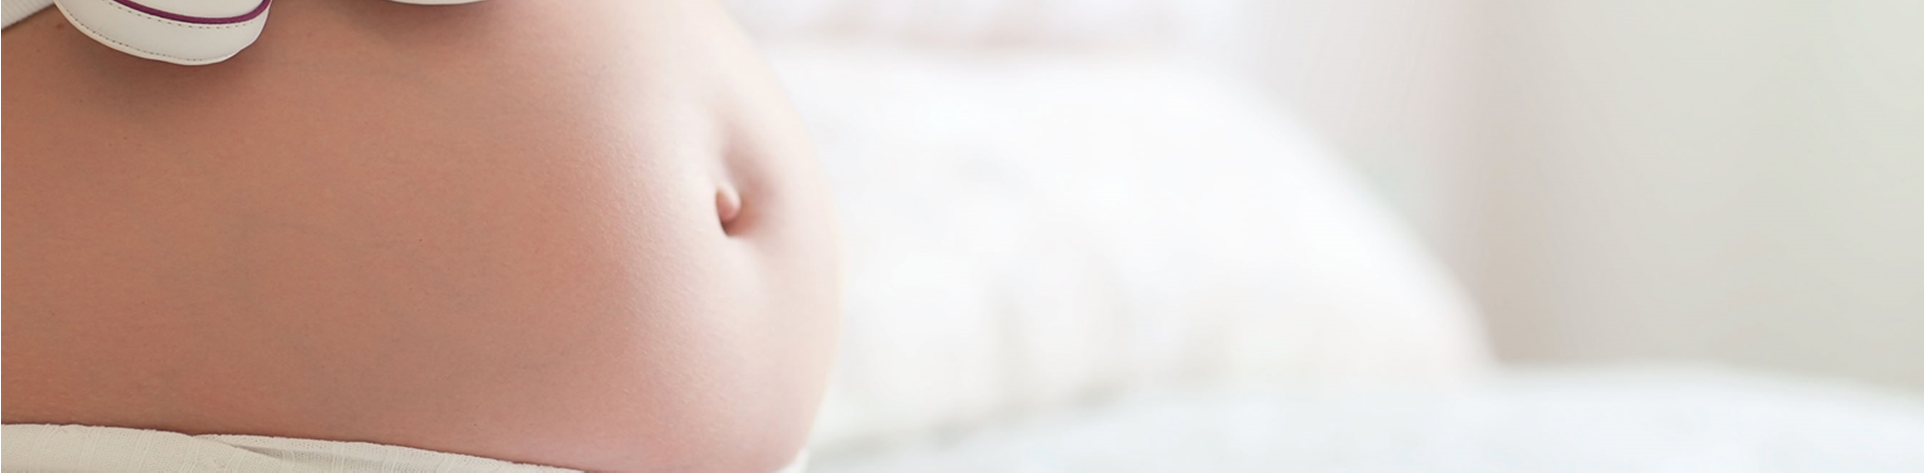 Schwangerschaft als Chance Bundeszentrale für gesundheitliche Aufklärung Familienplanung bis zur frühen Kindheit Frauen und ihre Partner zu unterschiedlichen Anlässen/Fragestellungen